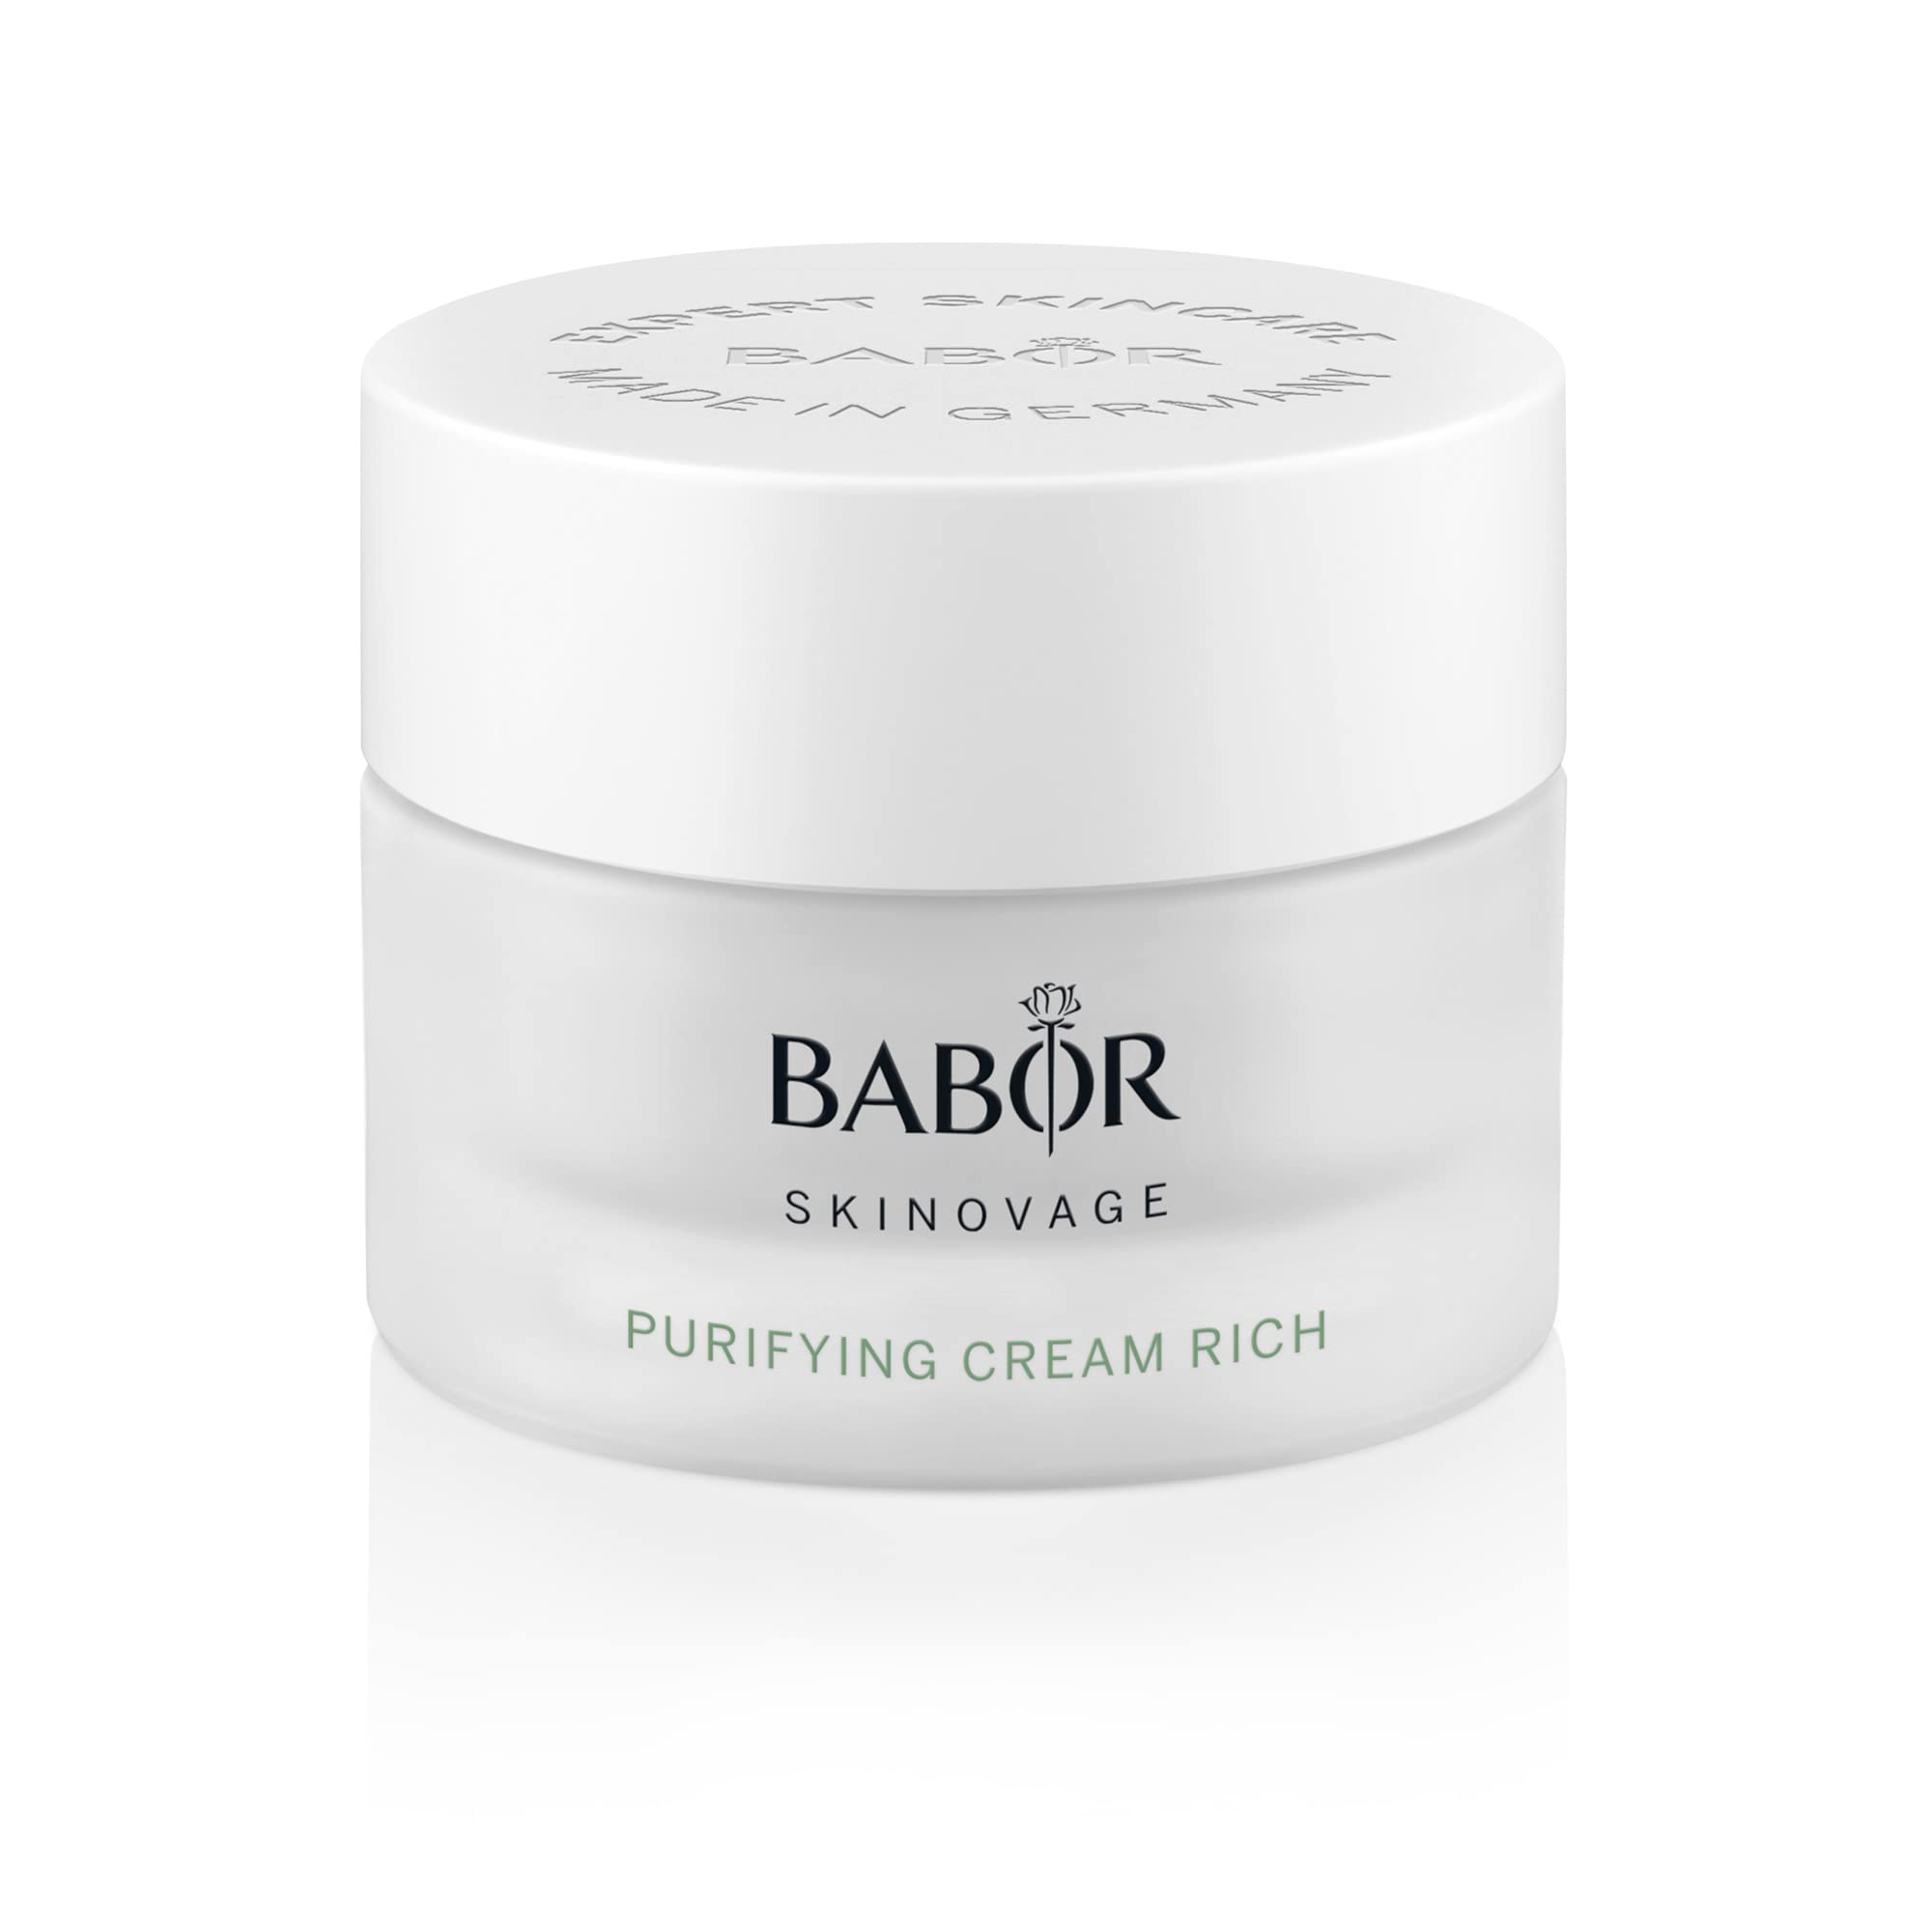 BABOR SKINOVAGE Purifying Cream rich, Reichhaltige Gesichtscreme für unreine Haut, Klärende und porenverfeinernde Gesichtspflege, Vegan, 50 ml